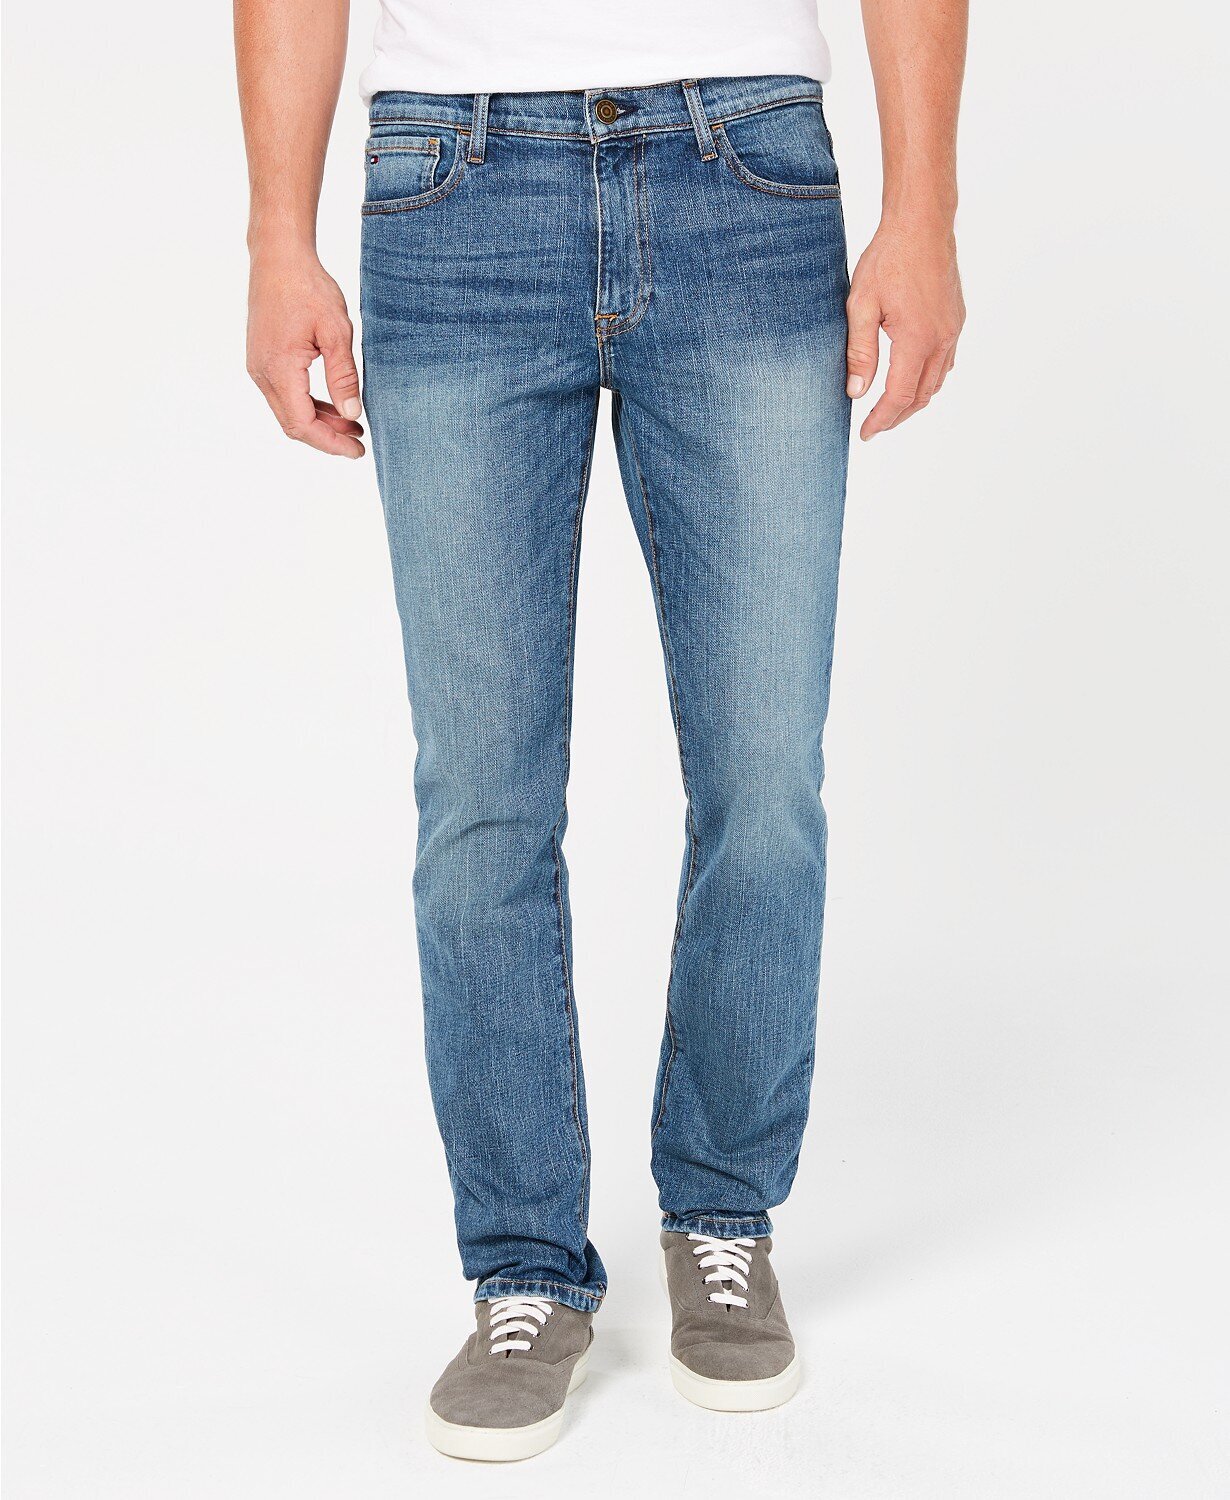 calvin klein bootcut jeans mens